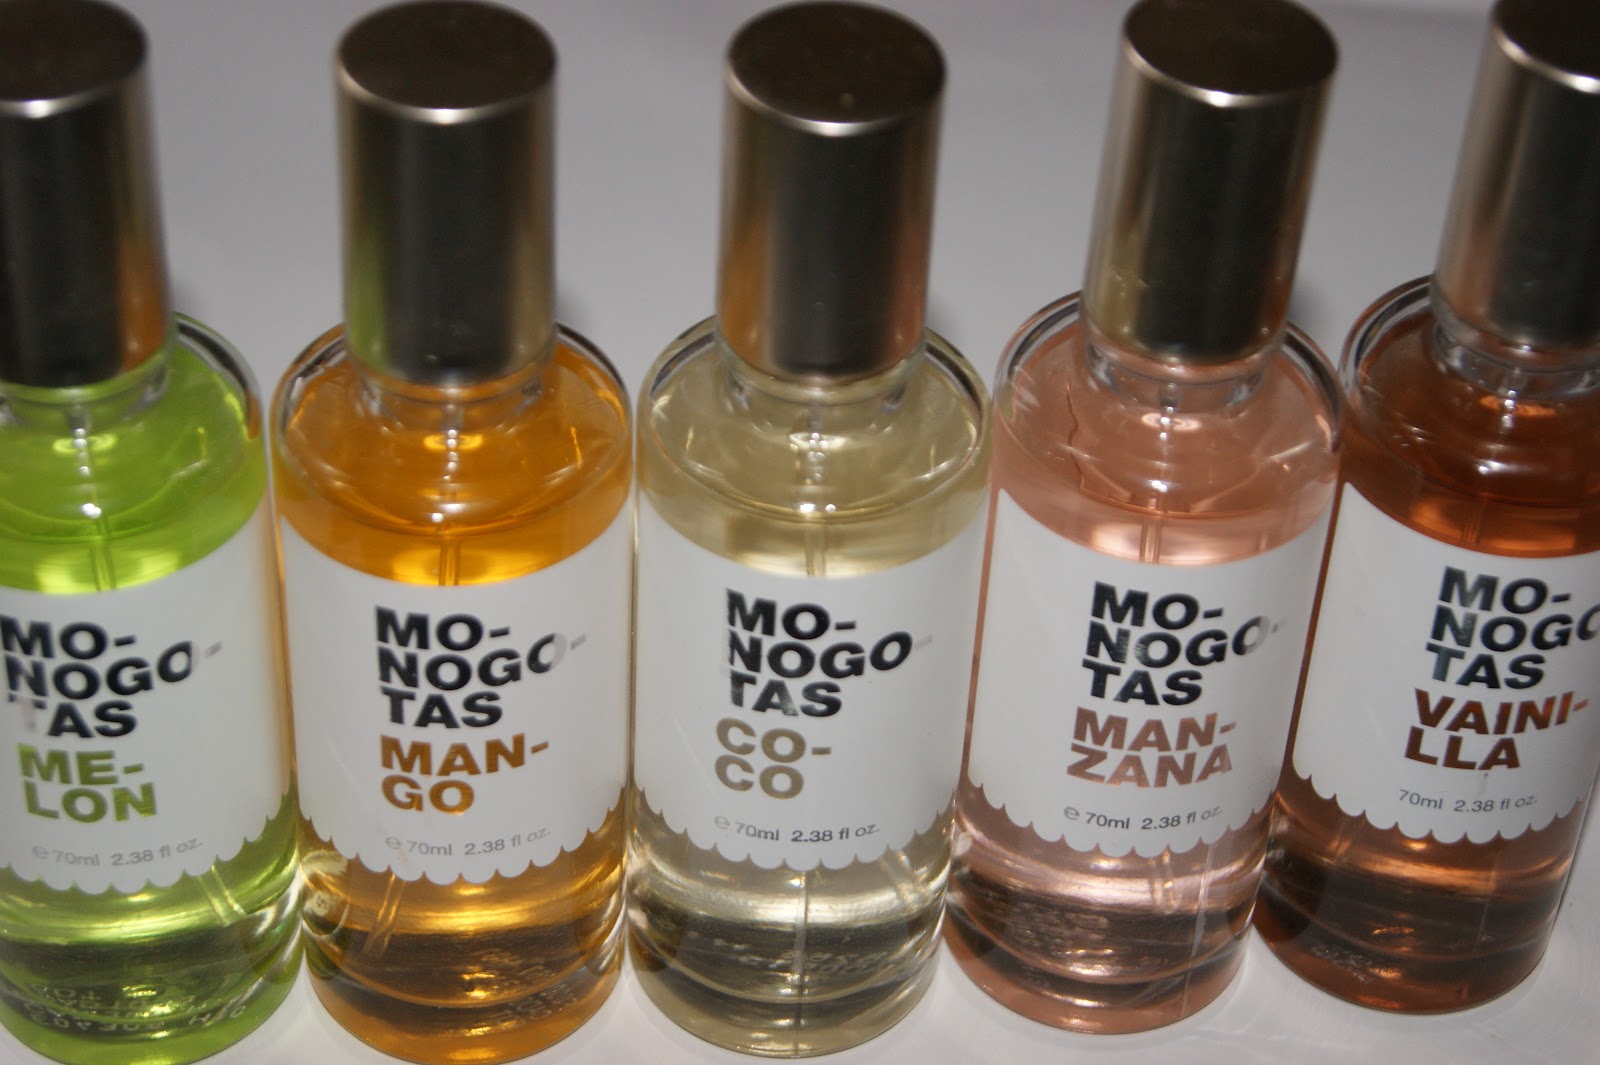 MO-NOGO-TAS Body Sprays - Review